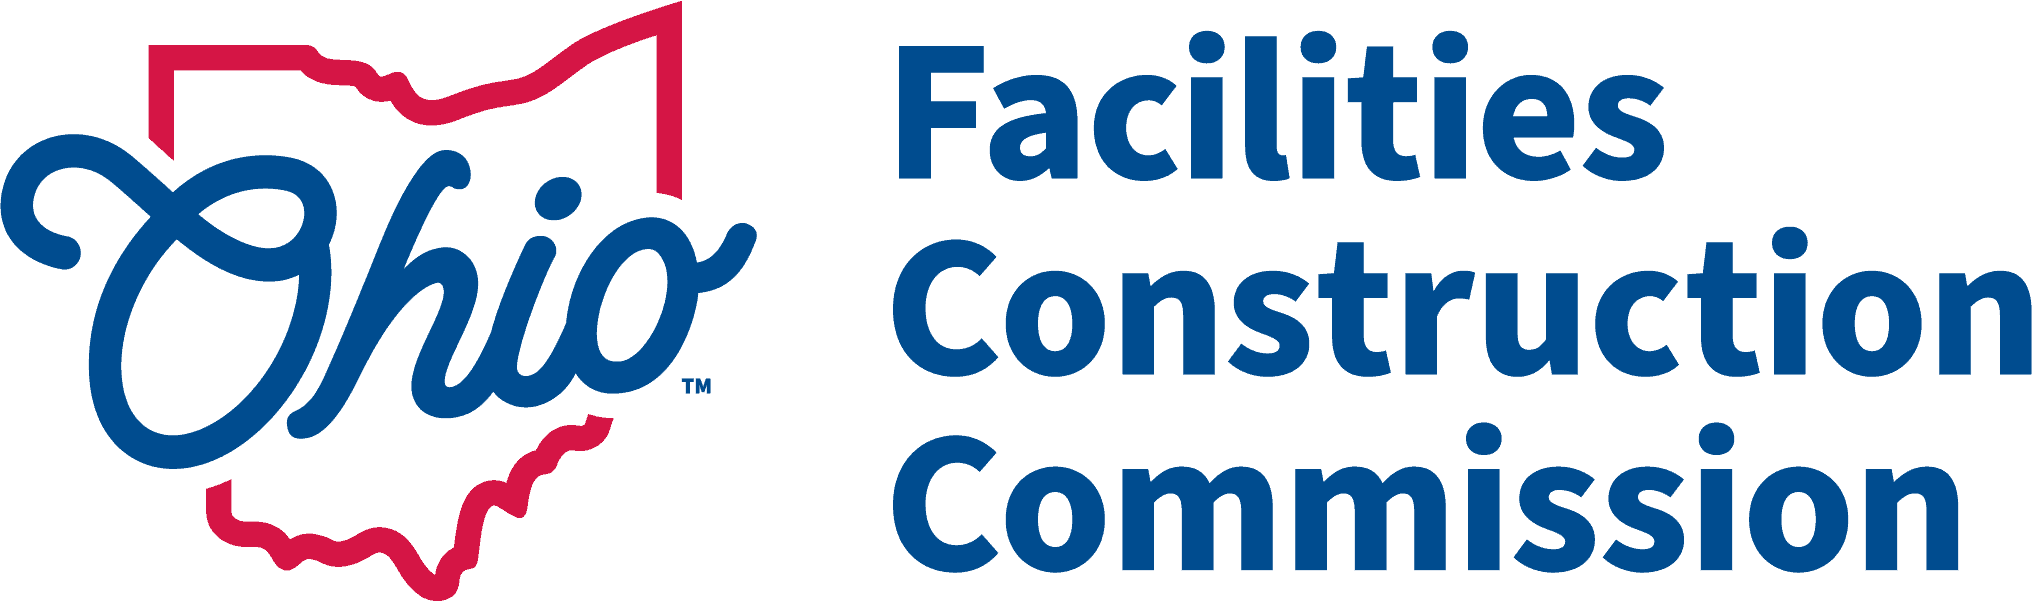 OFCC Logo